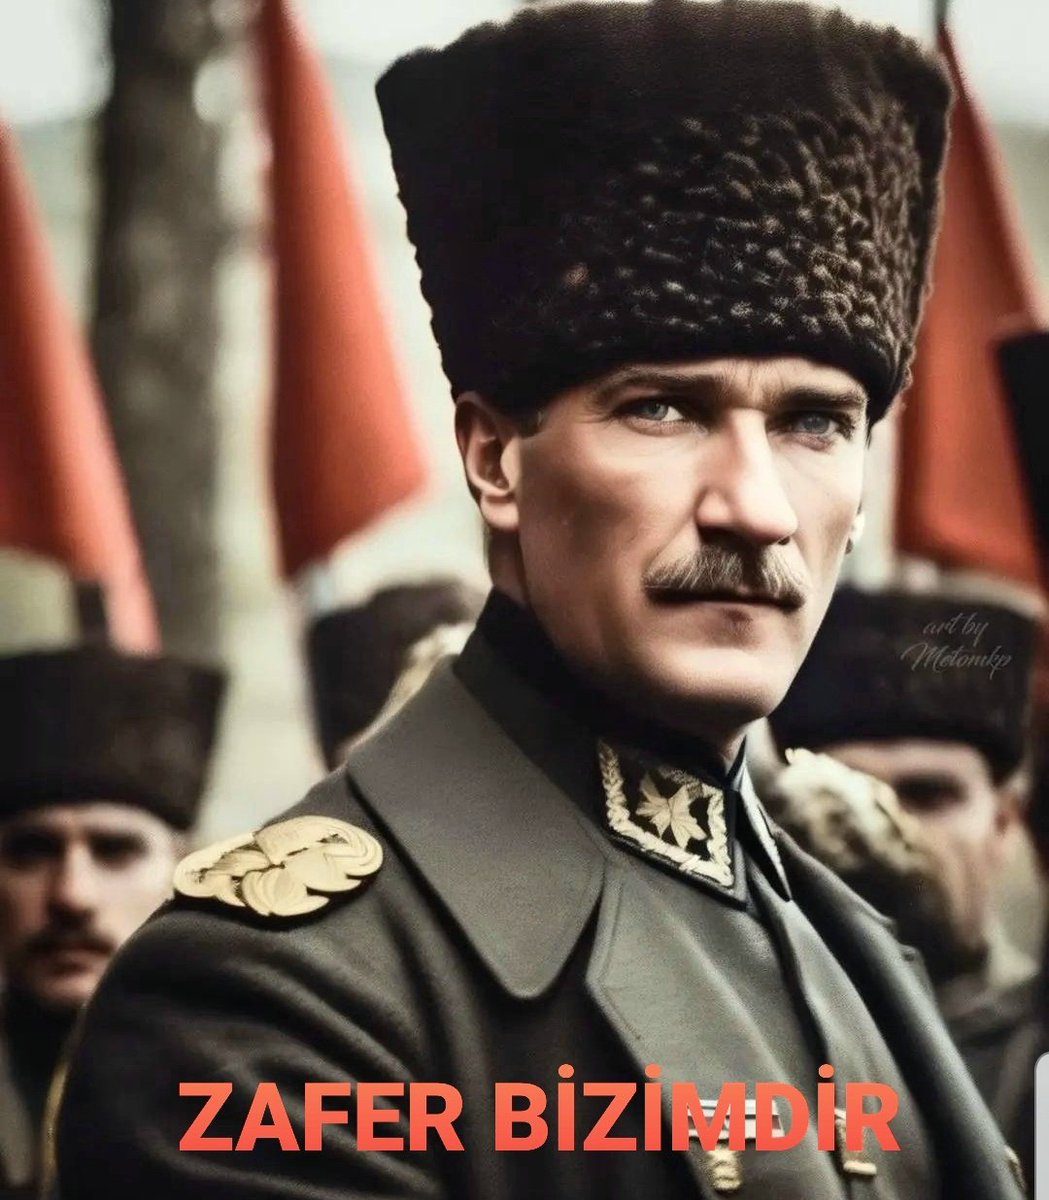 🇹🇷BAŞKOMUTANIMIZ
🇹🇷Mustafa Kemal Atatürk
🇹🇷#30AgustosZaferBayramimiz
🇹🇷101. Yılımız
🇹🇷🇹🇷🇹🇷🇹🇷🇹🇷ZAFER🇹🇷🇹🇷🇹🇷🇹🇷🇹🇷